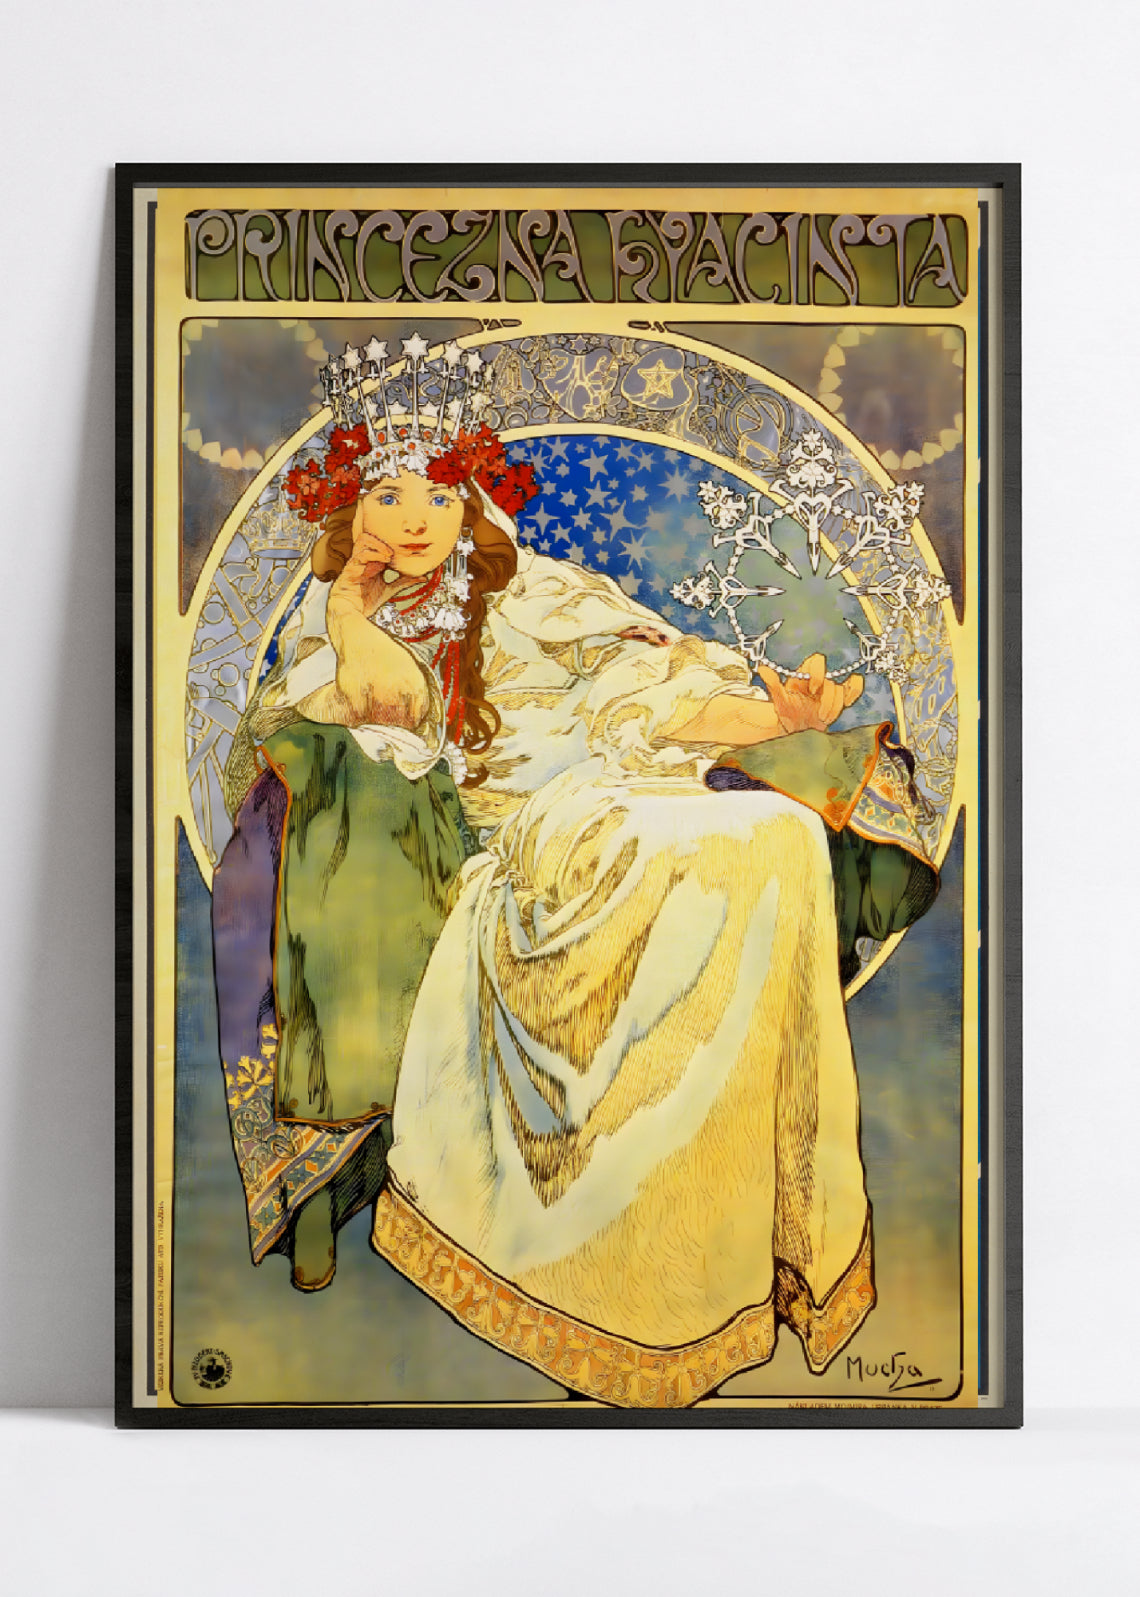 Affiche Alphonse Mucha "Princesse Hyacinthe" - Art Nouveau - Haute Définition - papier mat 230gr/m2